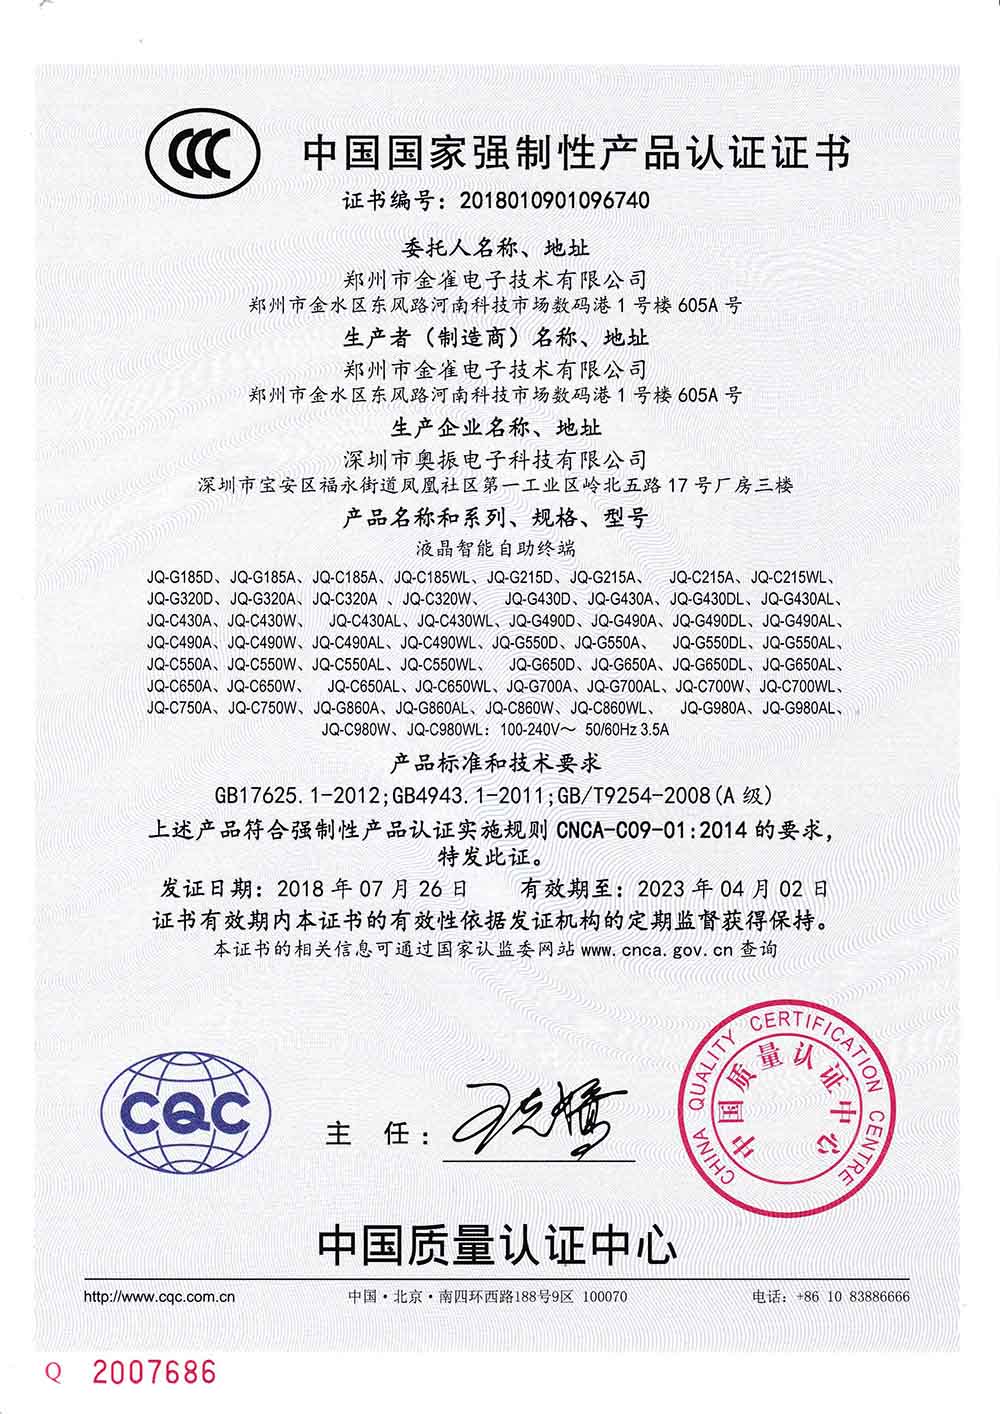 河南触摸一体机获得"中国国家强制性品认证"?证书